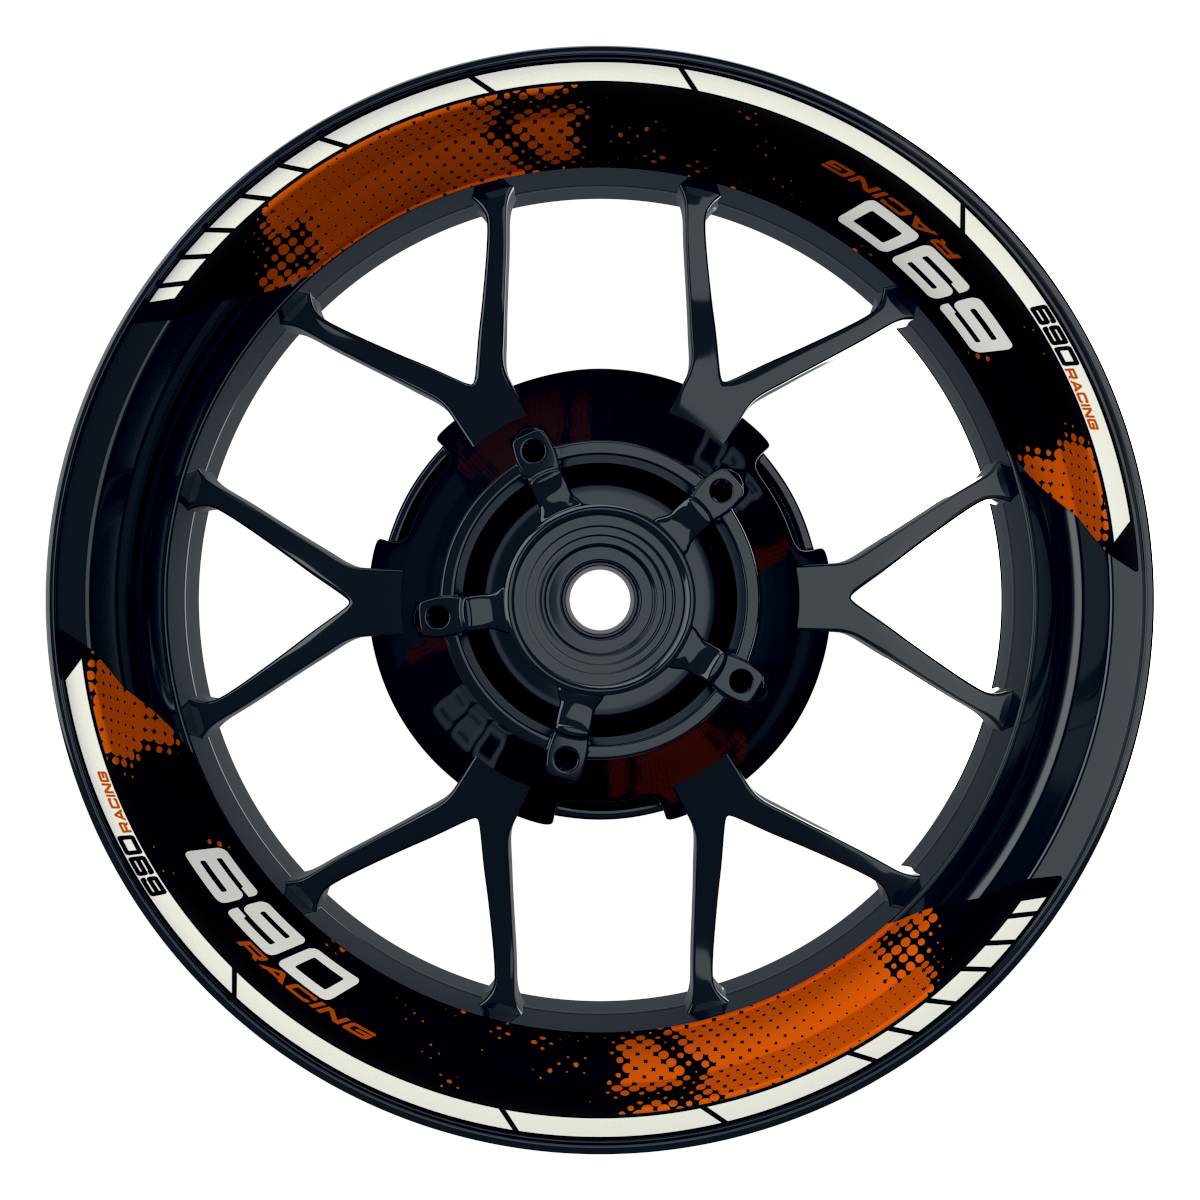 KTM Racing 690 Dots schwarz orange Frontansicht